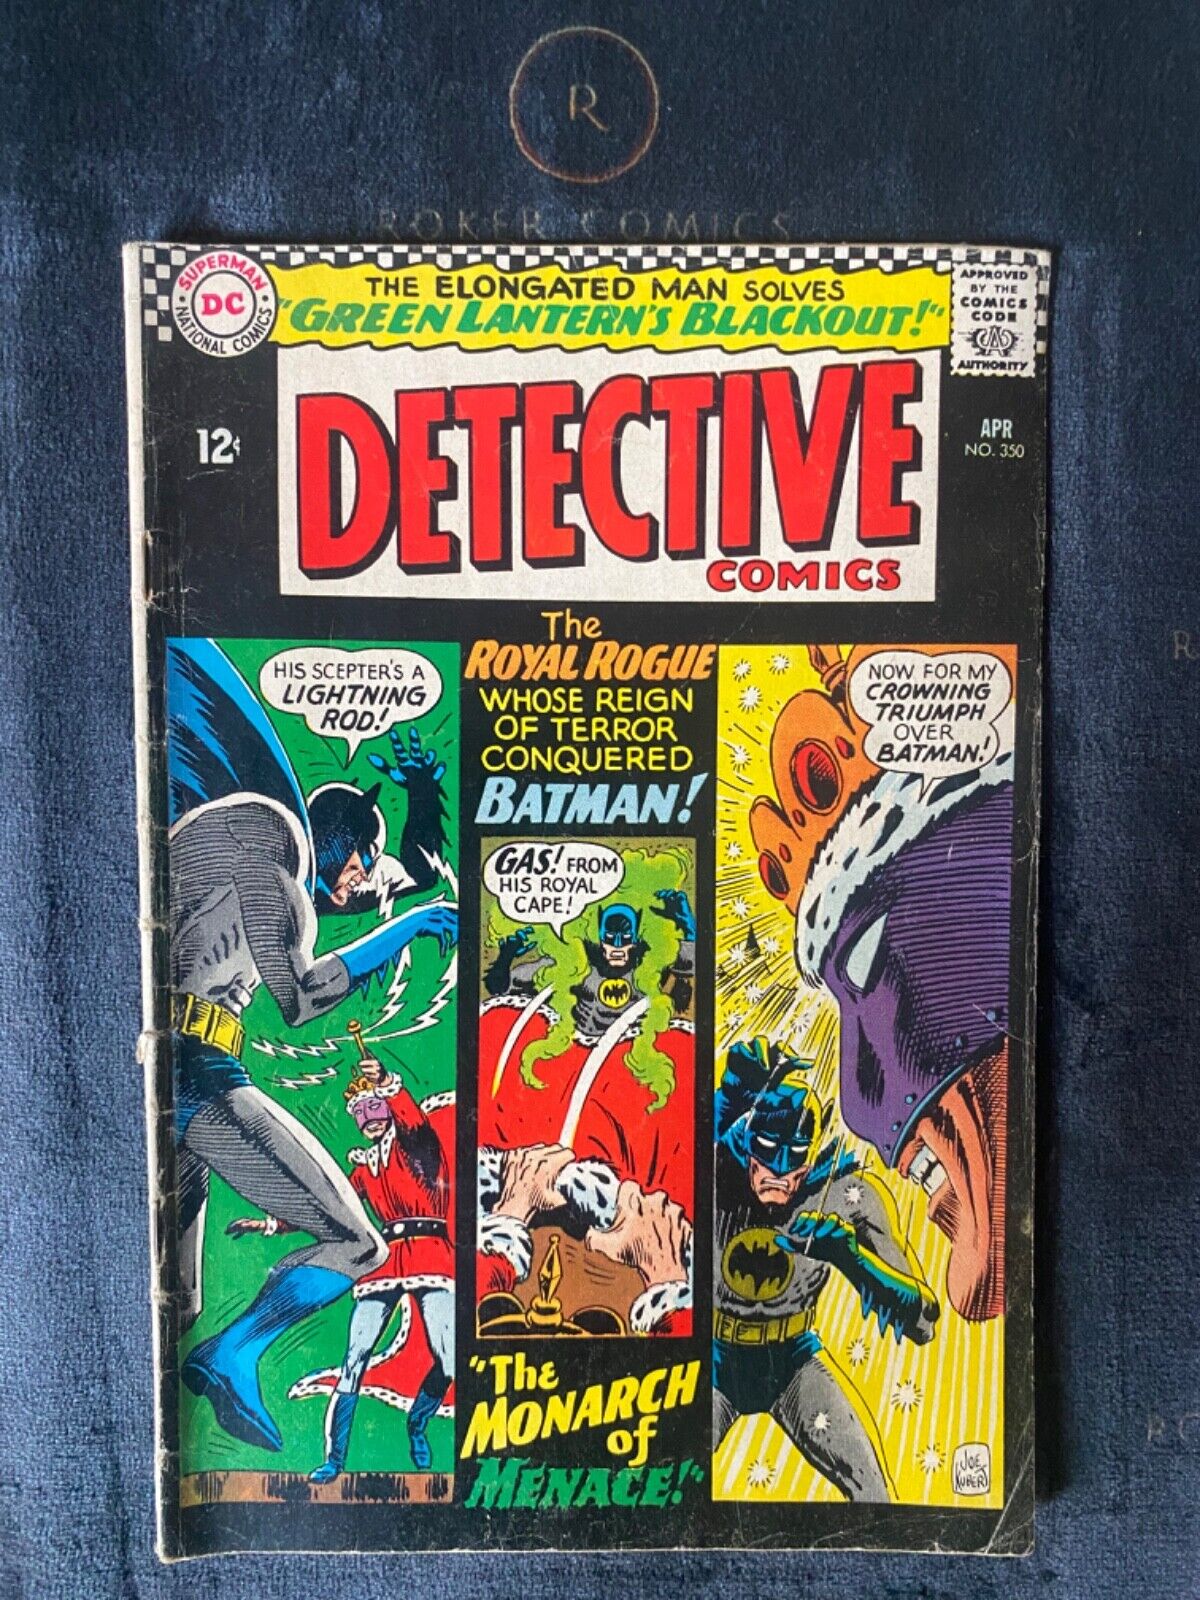 1966 Detective Comics #350